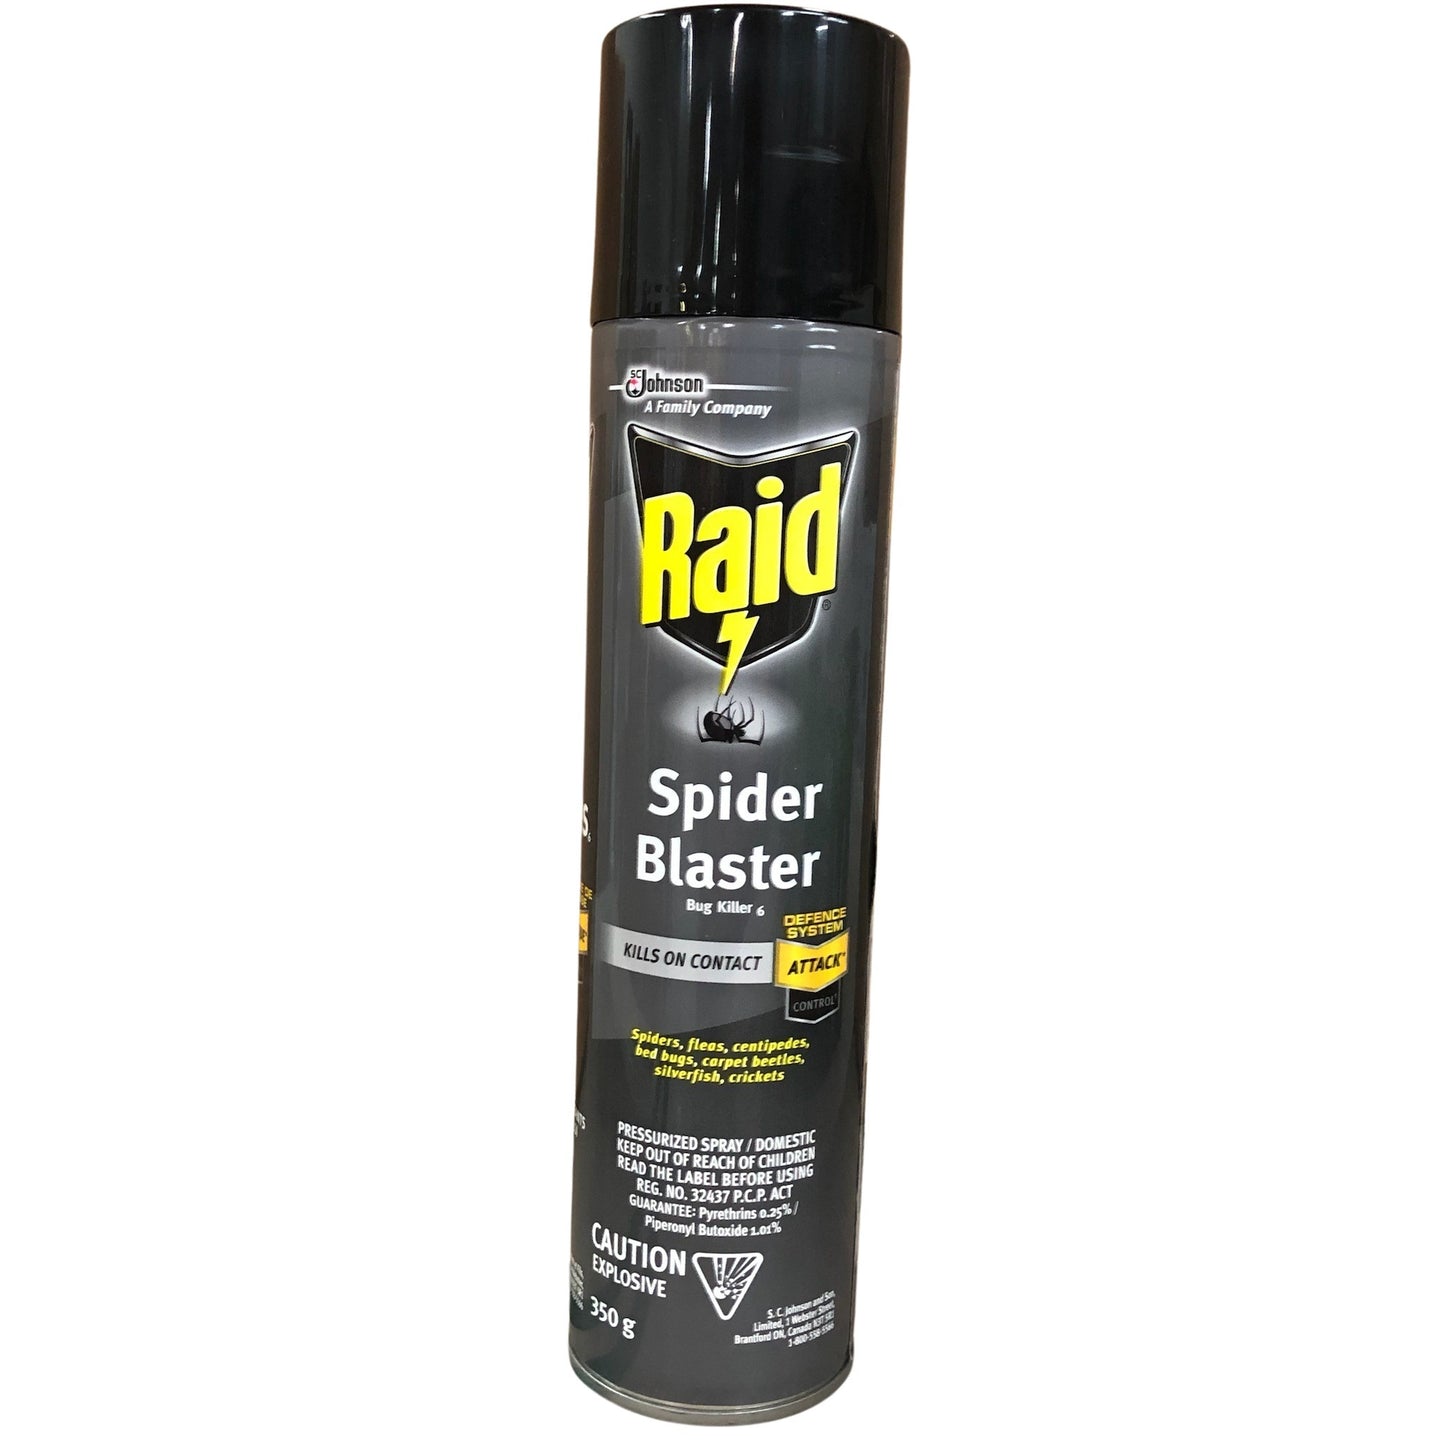 6029 Raid Spider Blaster 350g